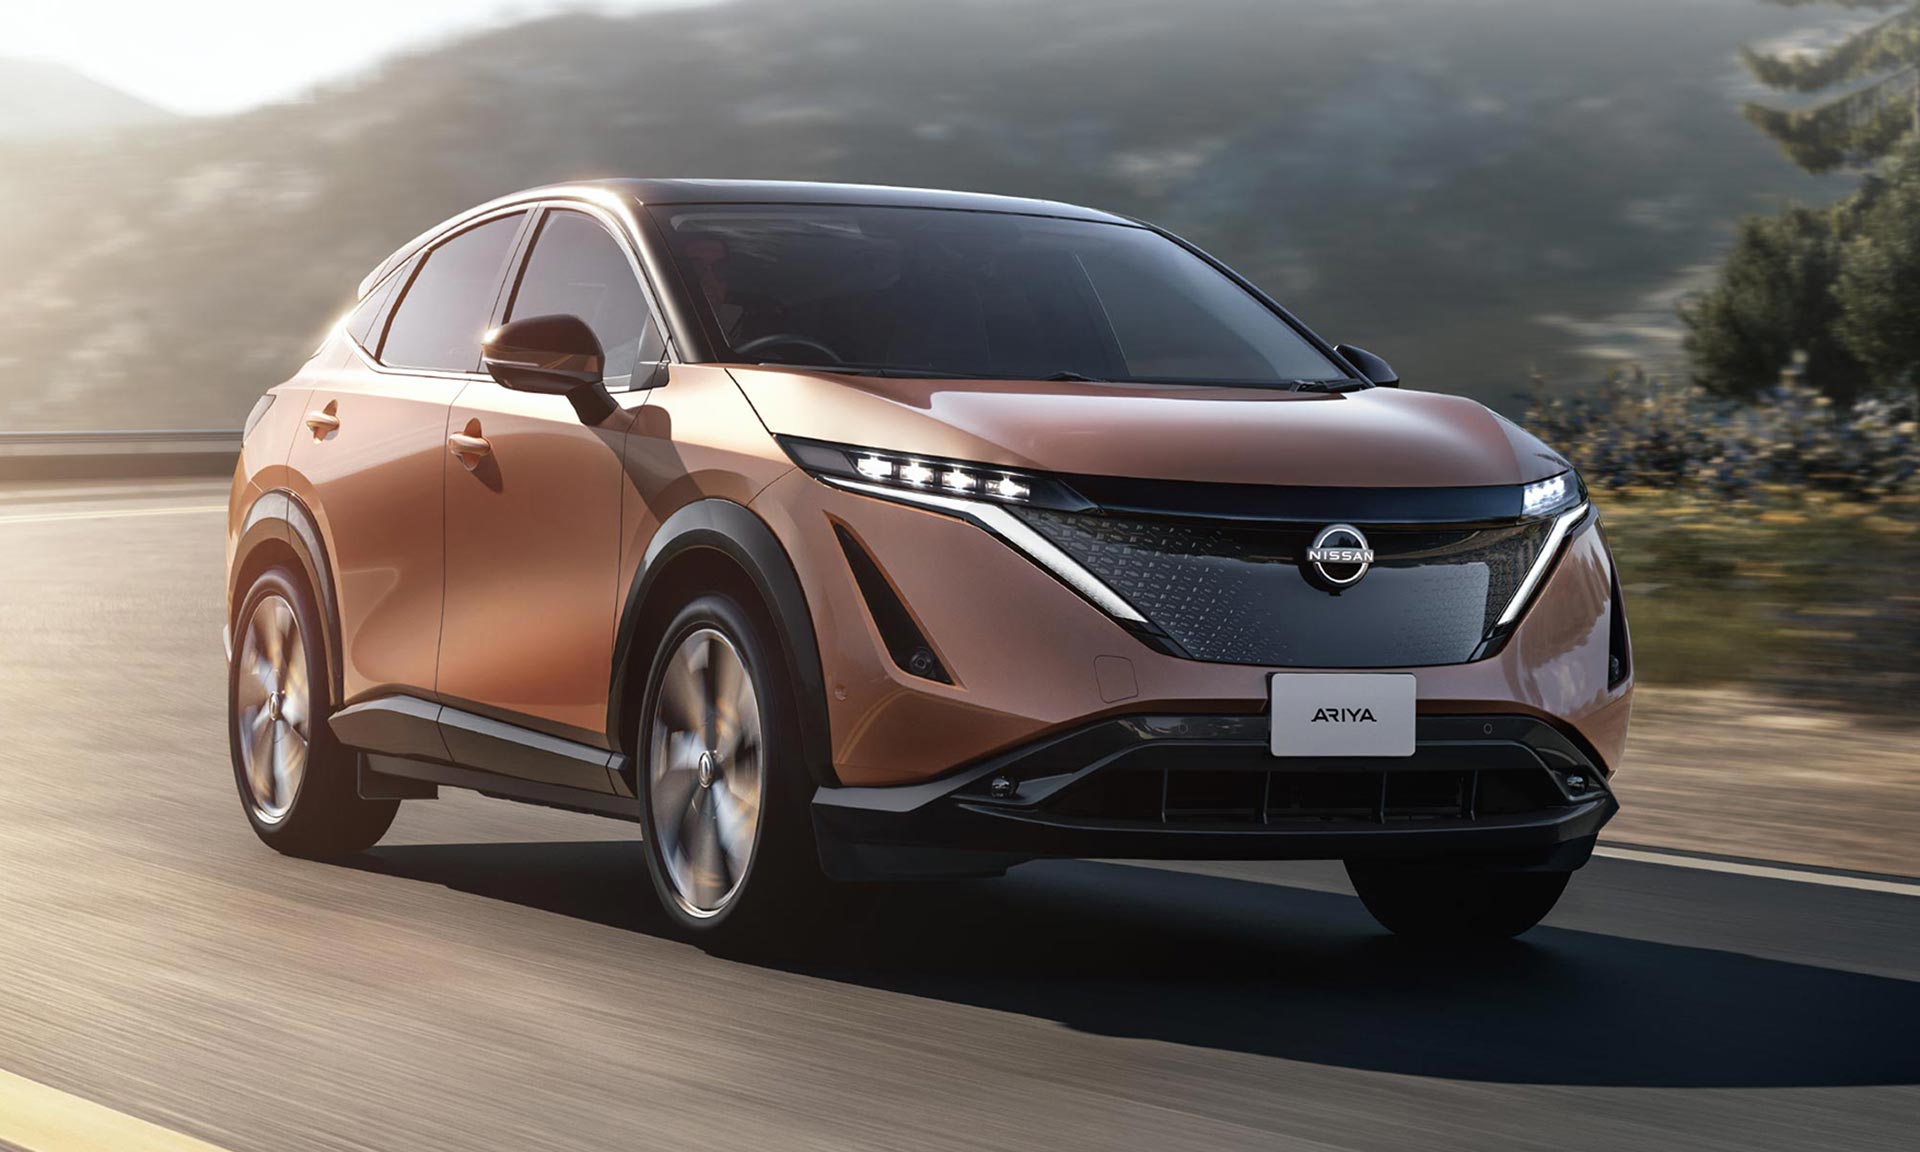 Elektrický crossover Nissan Ariya zahajuje novou éru nejen v designu značky